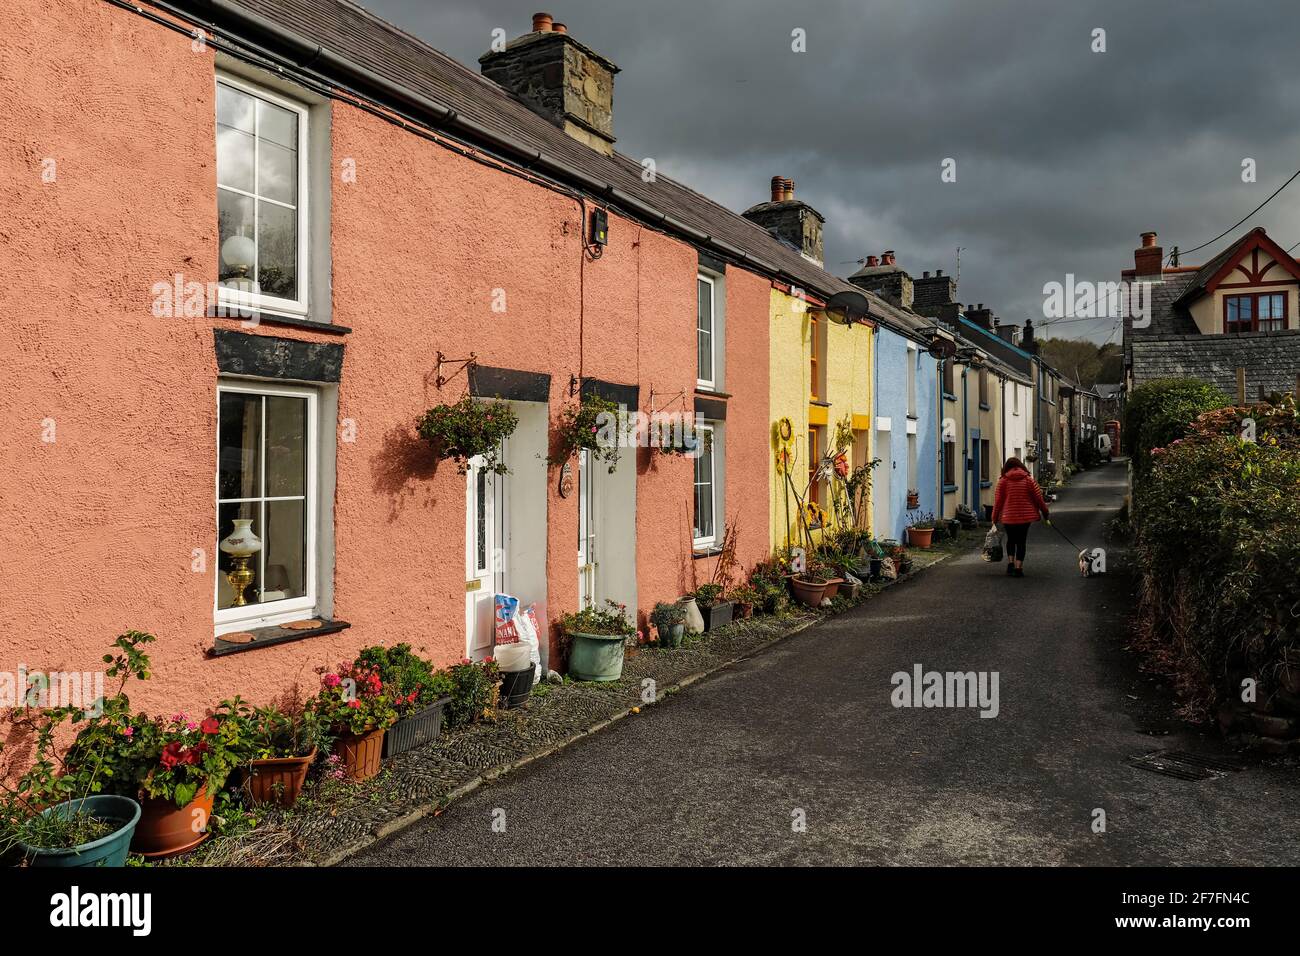 Maisons colorées sur Water Street dans cet ancien village côtier de construction navale sur la rivière Arth, Aberarth, Ceredigion, pays de Galles, Royaume-Uni Banque D'Images